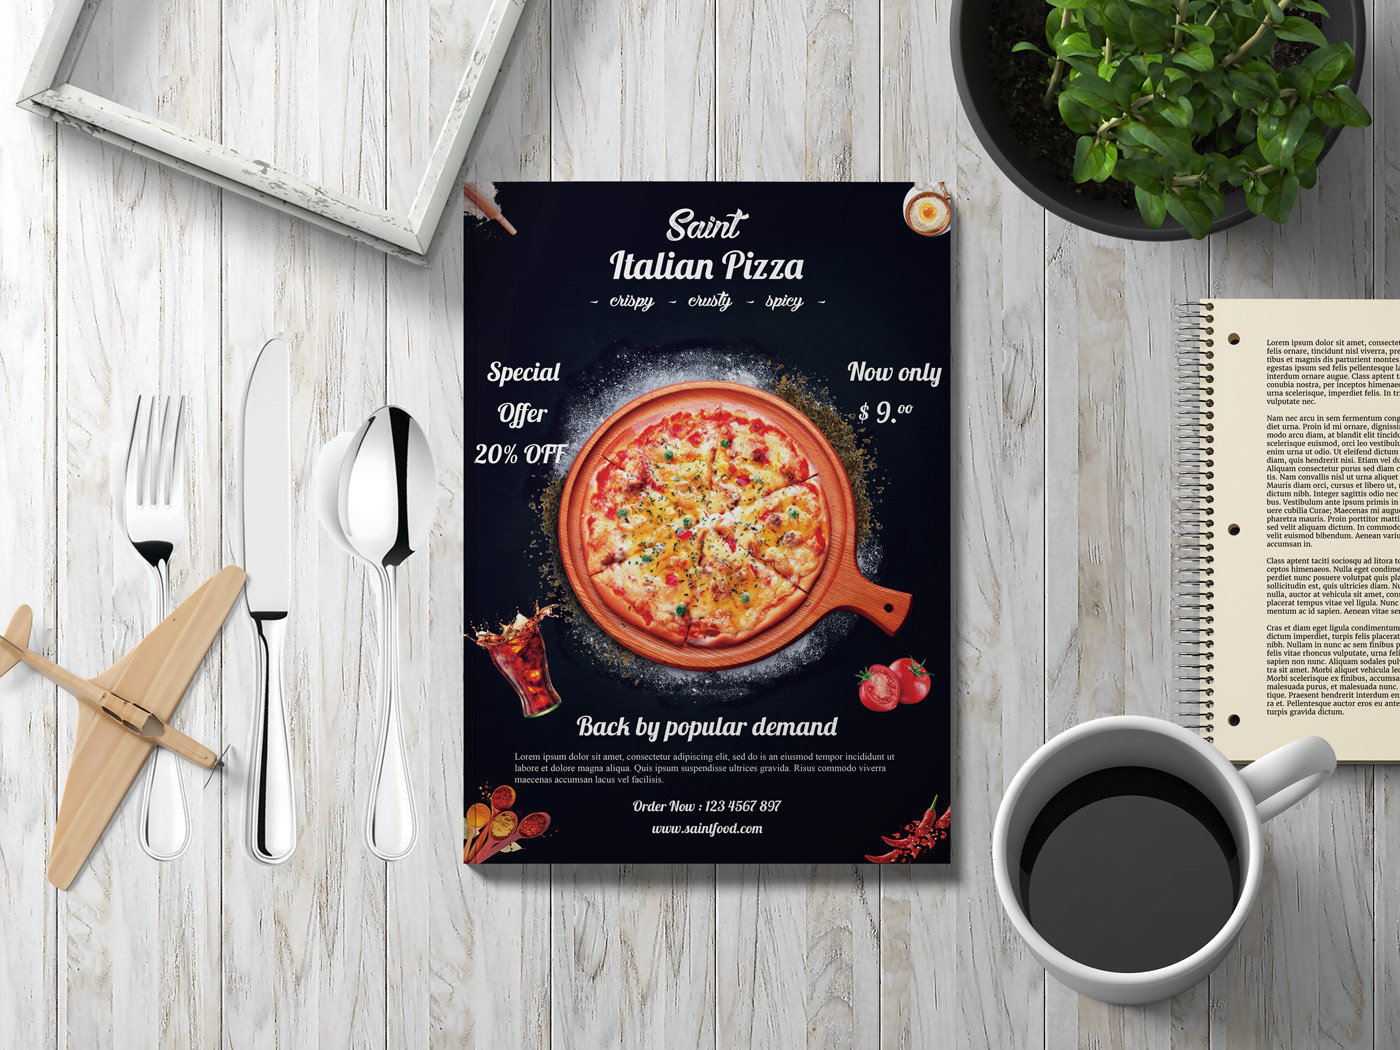 flyer Food  poster resturent restaurant flyer food menu pizza flyer Free flyer mockup restaurant brochure business